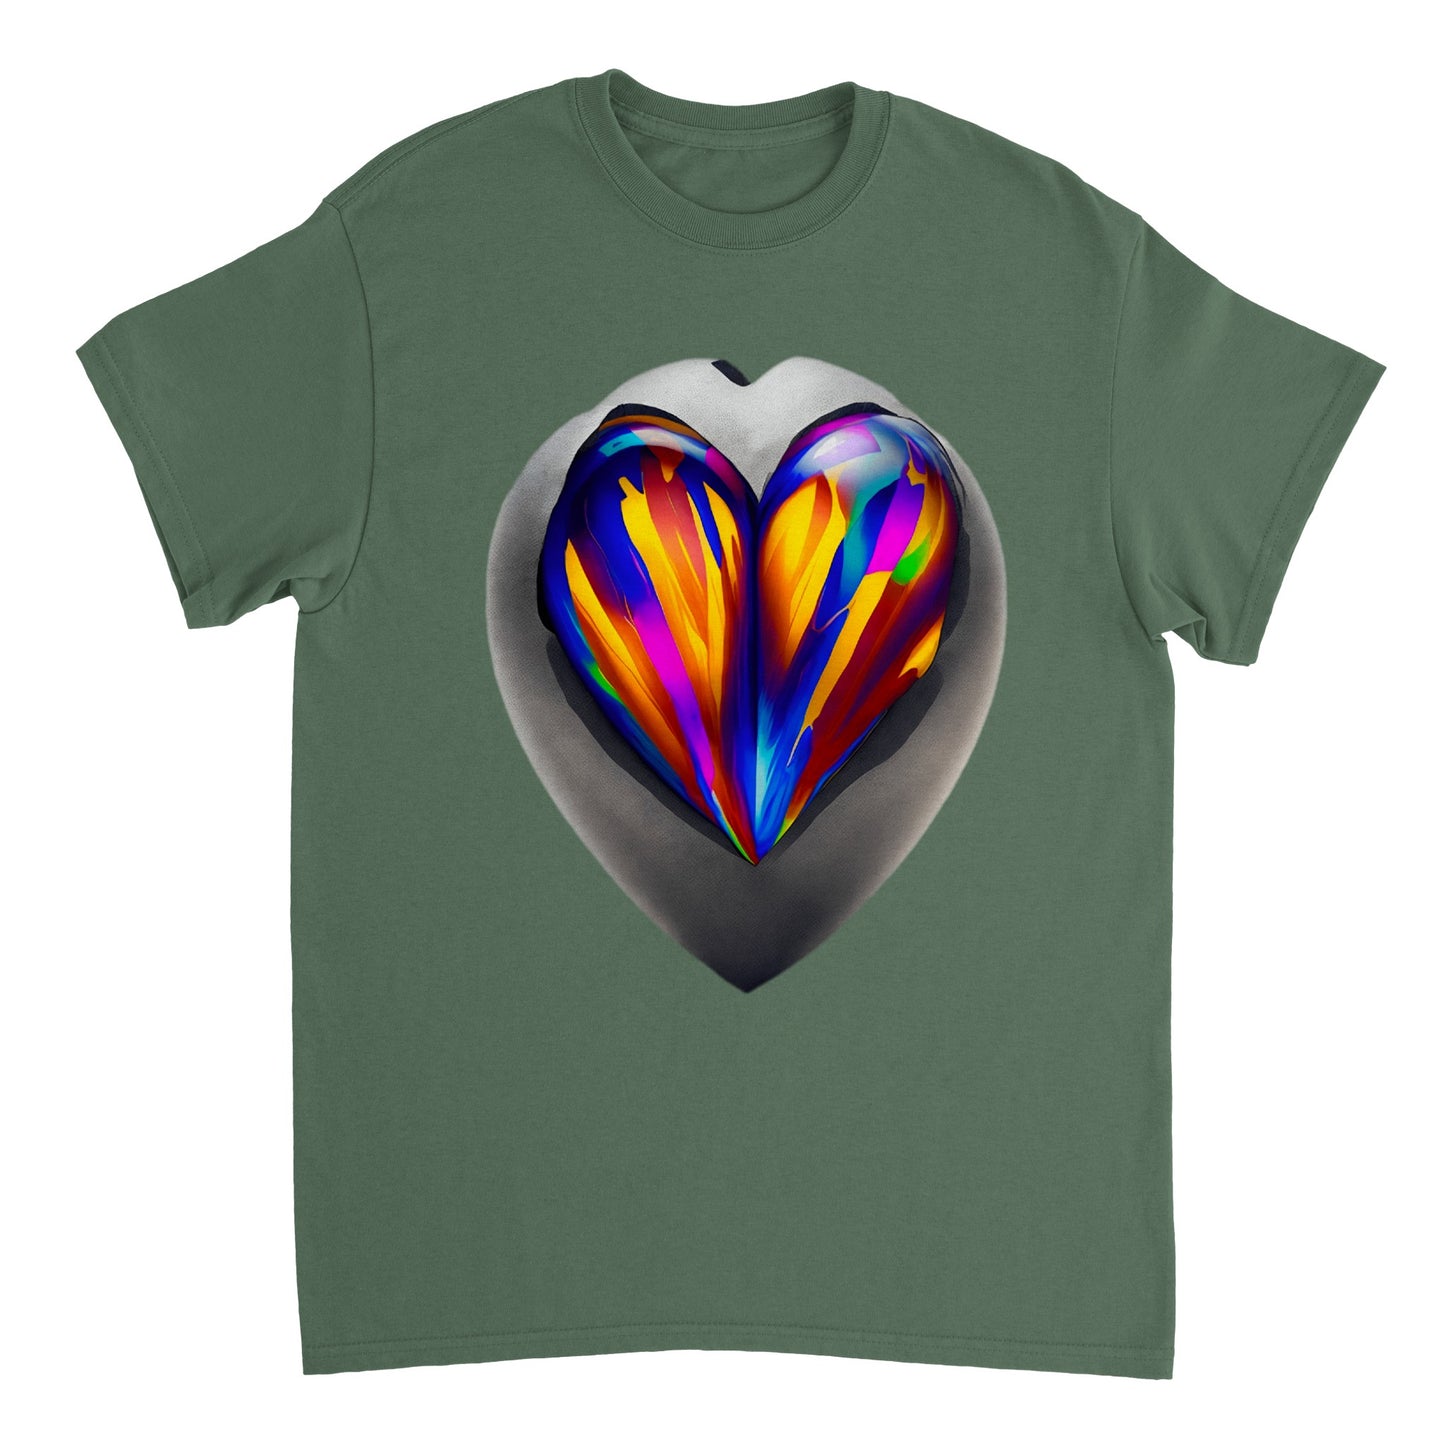 Love Heart - Heavyweight Unisex Crewneck T-shirt 60